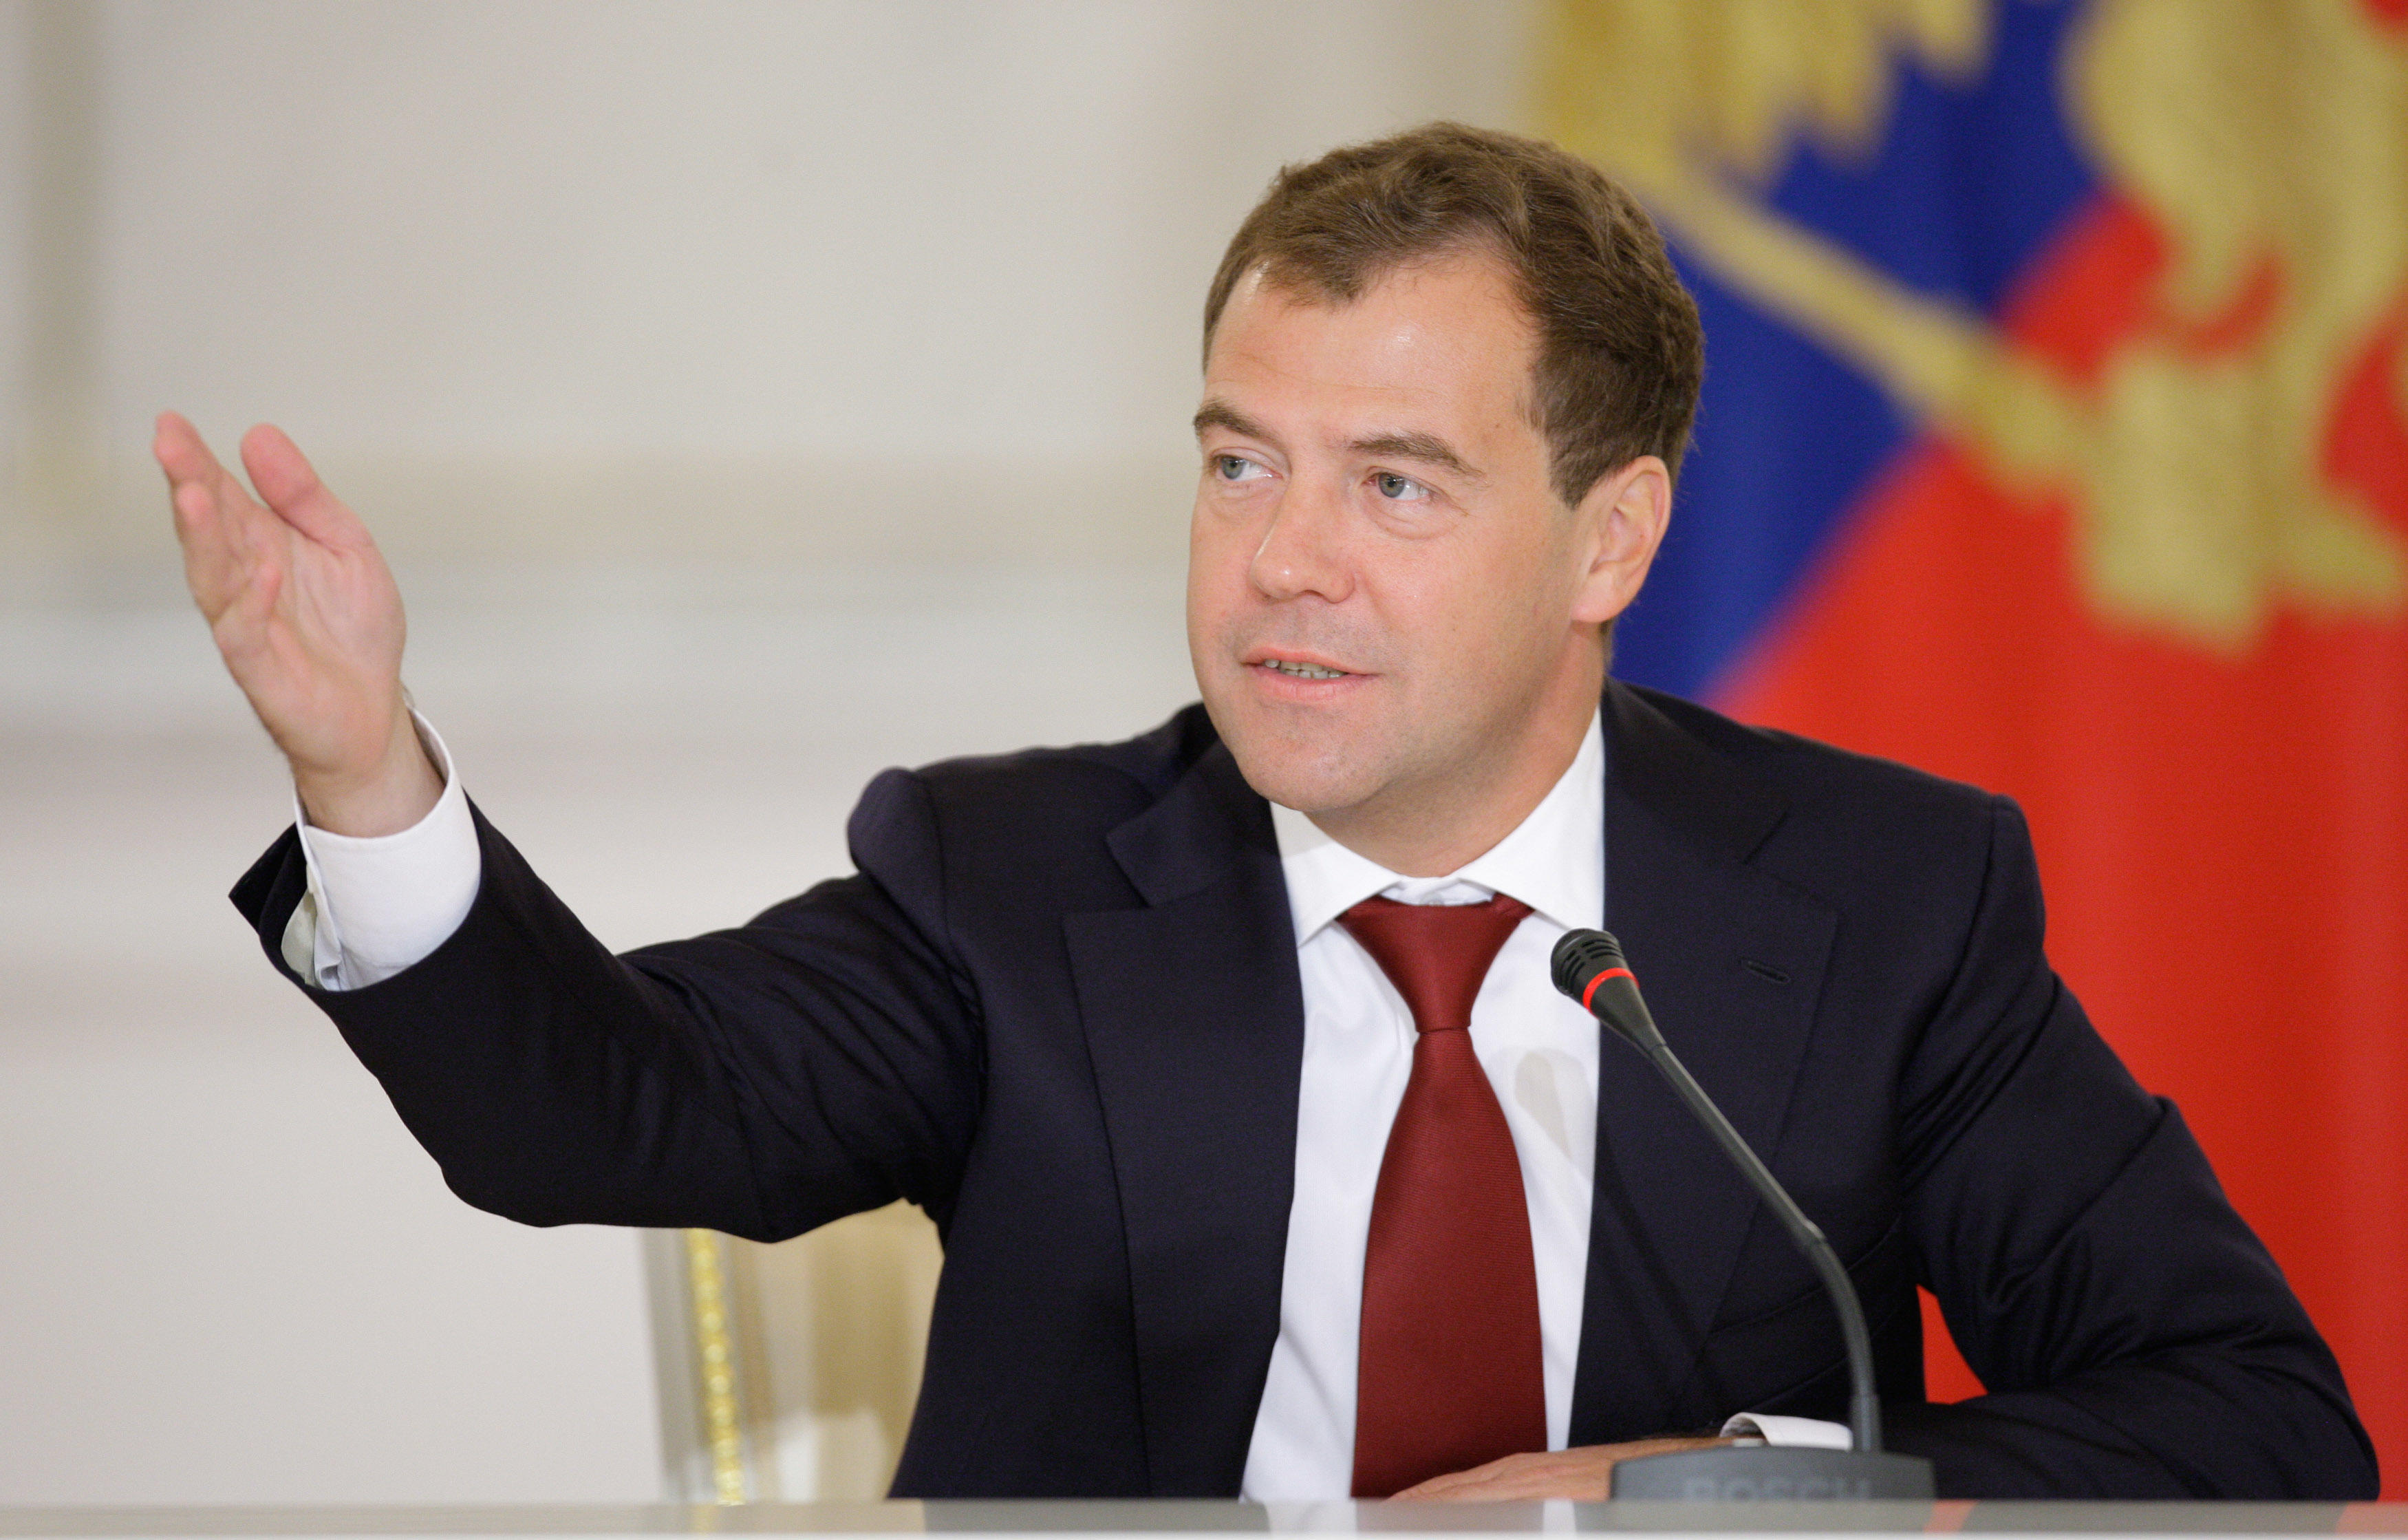 Дмитрий Медведев: для развития экономики надо много работать